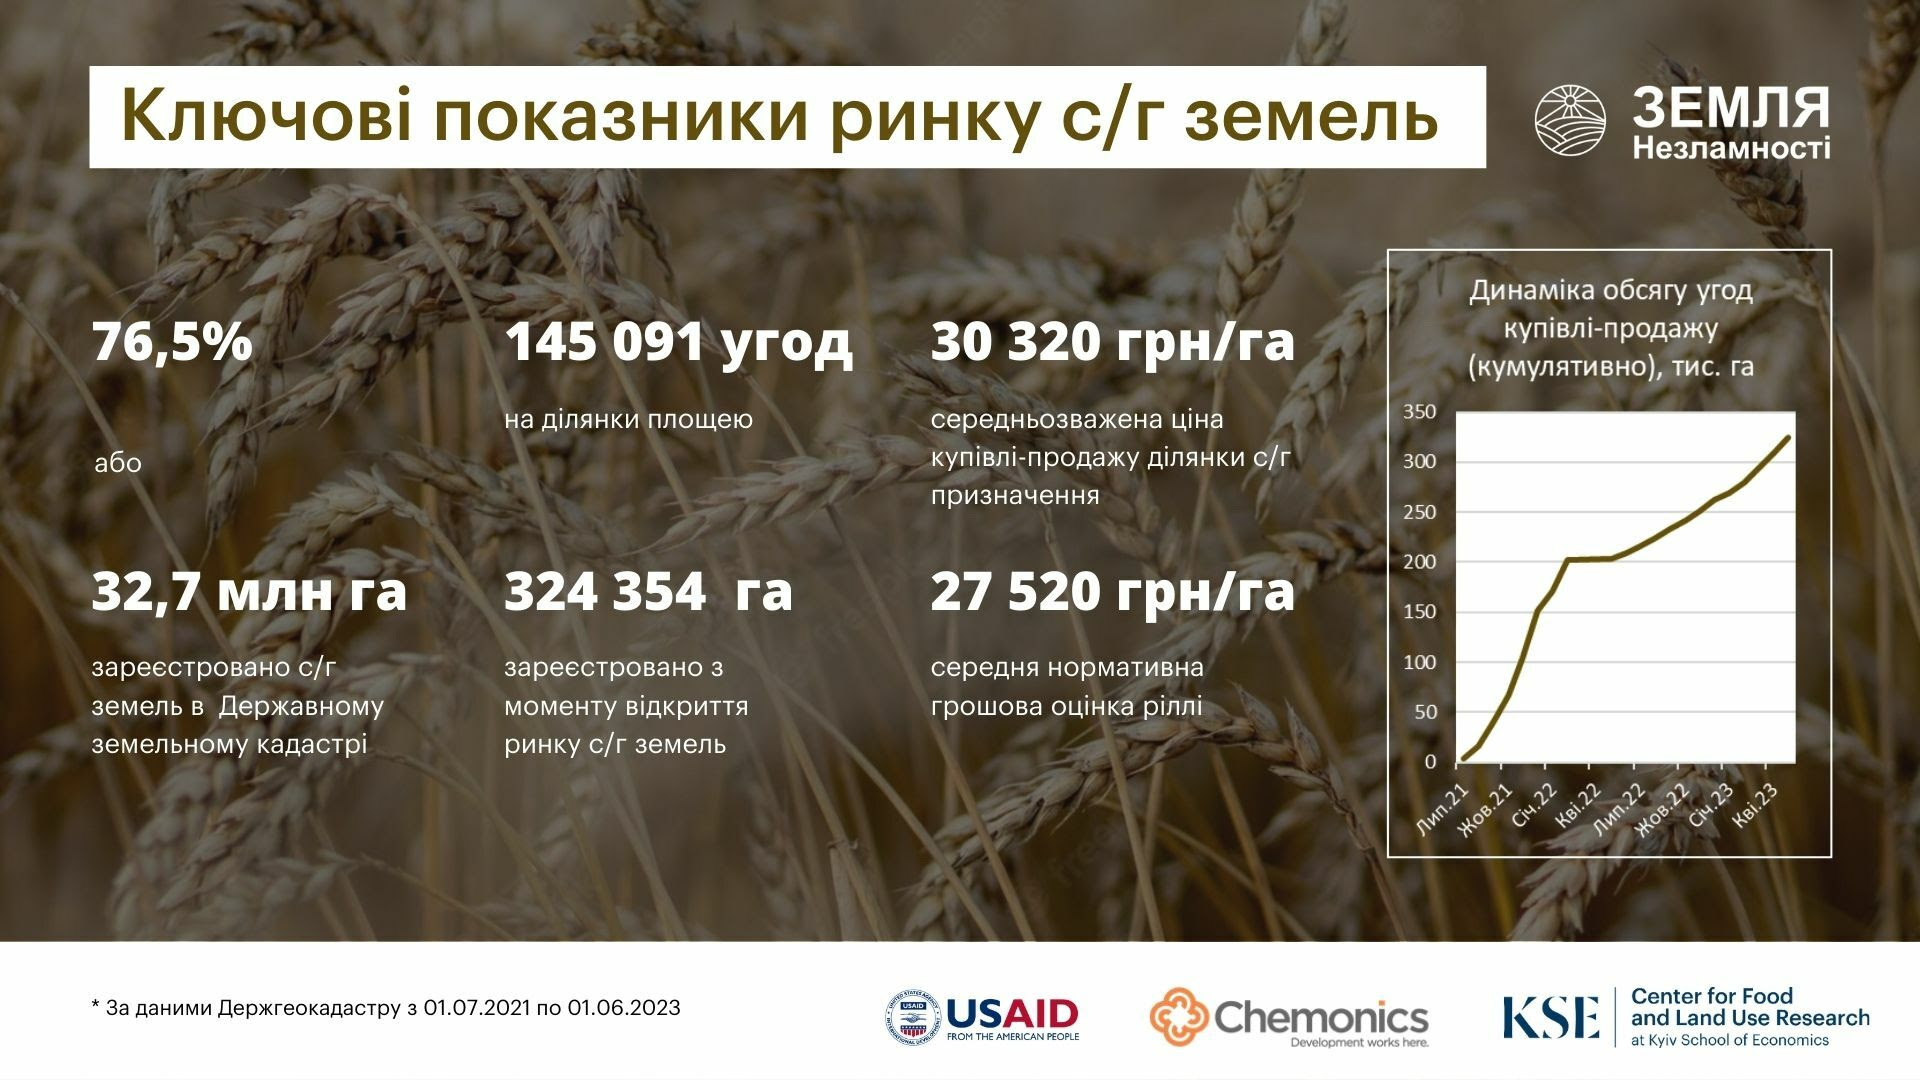 Ринок сільгоспземель в Україні повертається на довоєнні показники – KSE Агроцентр за підтримки Програми USAID АГРО запускає регулярні аналітичні огляди земельного ринку